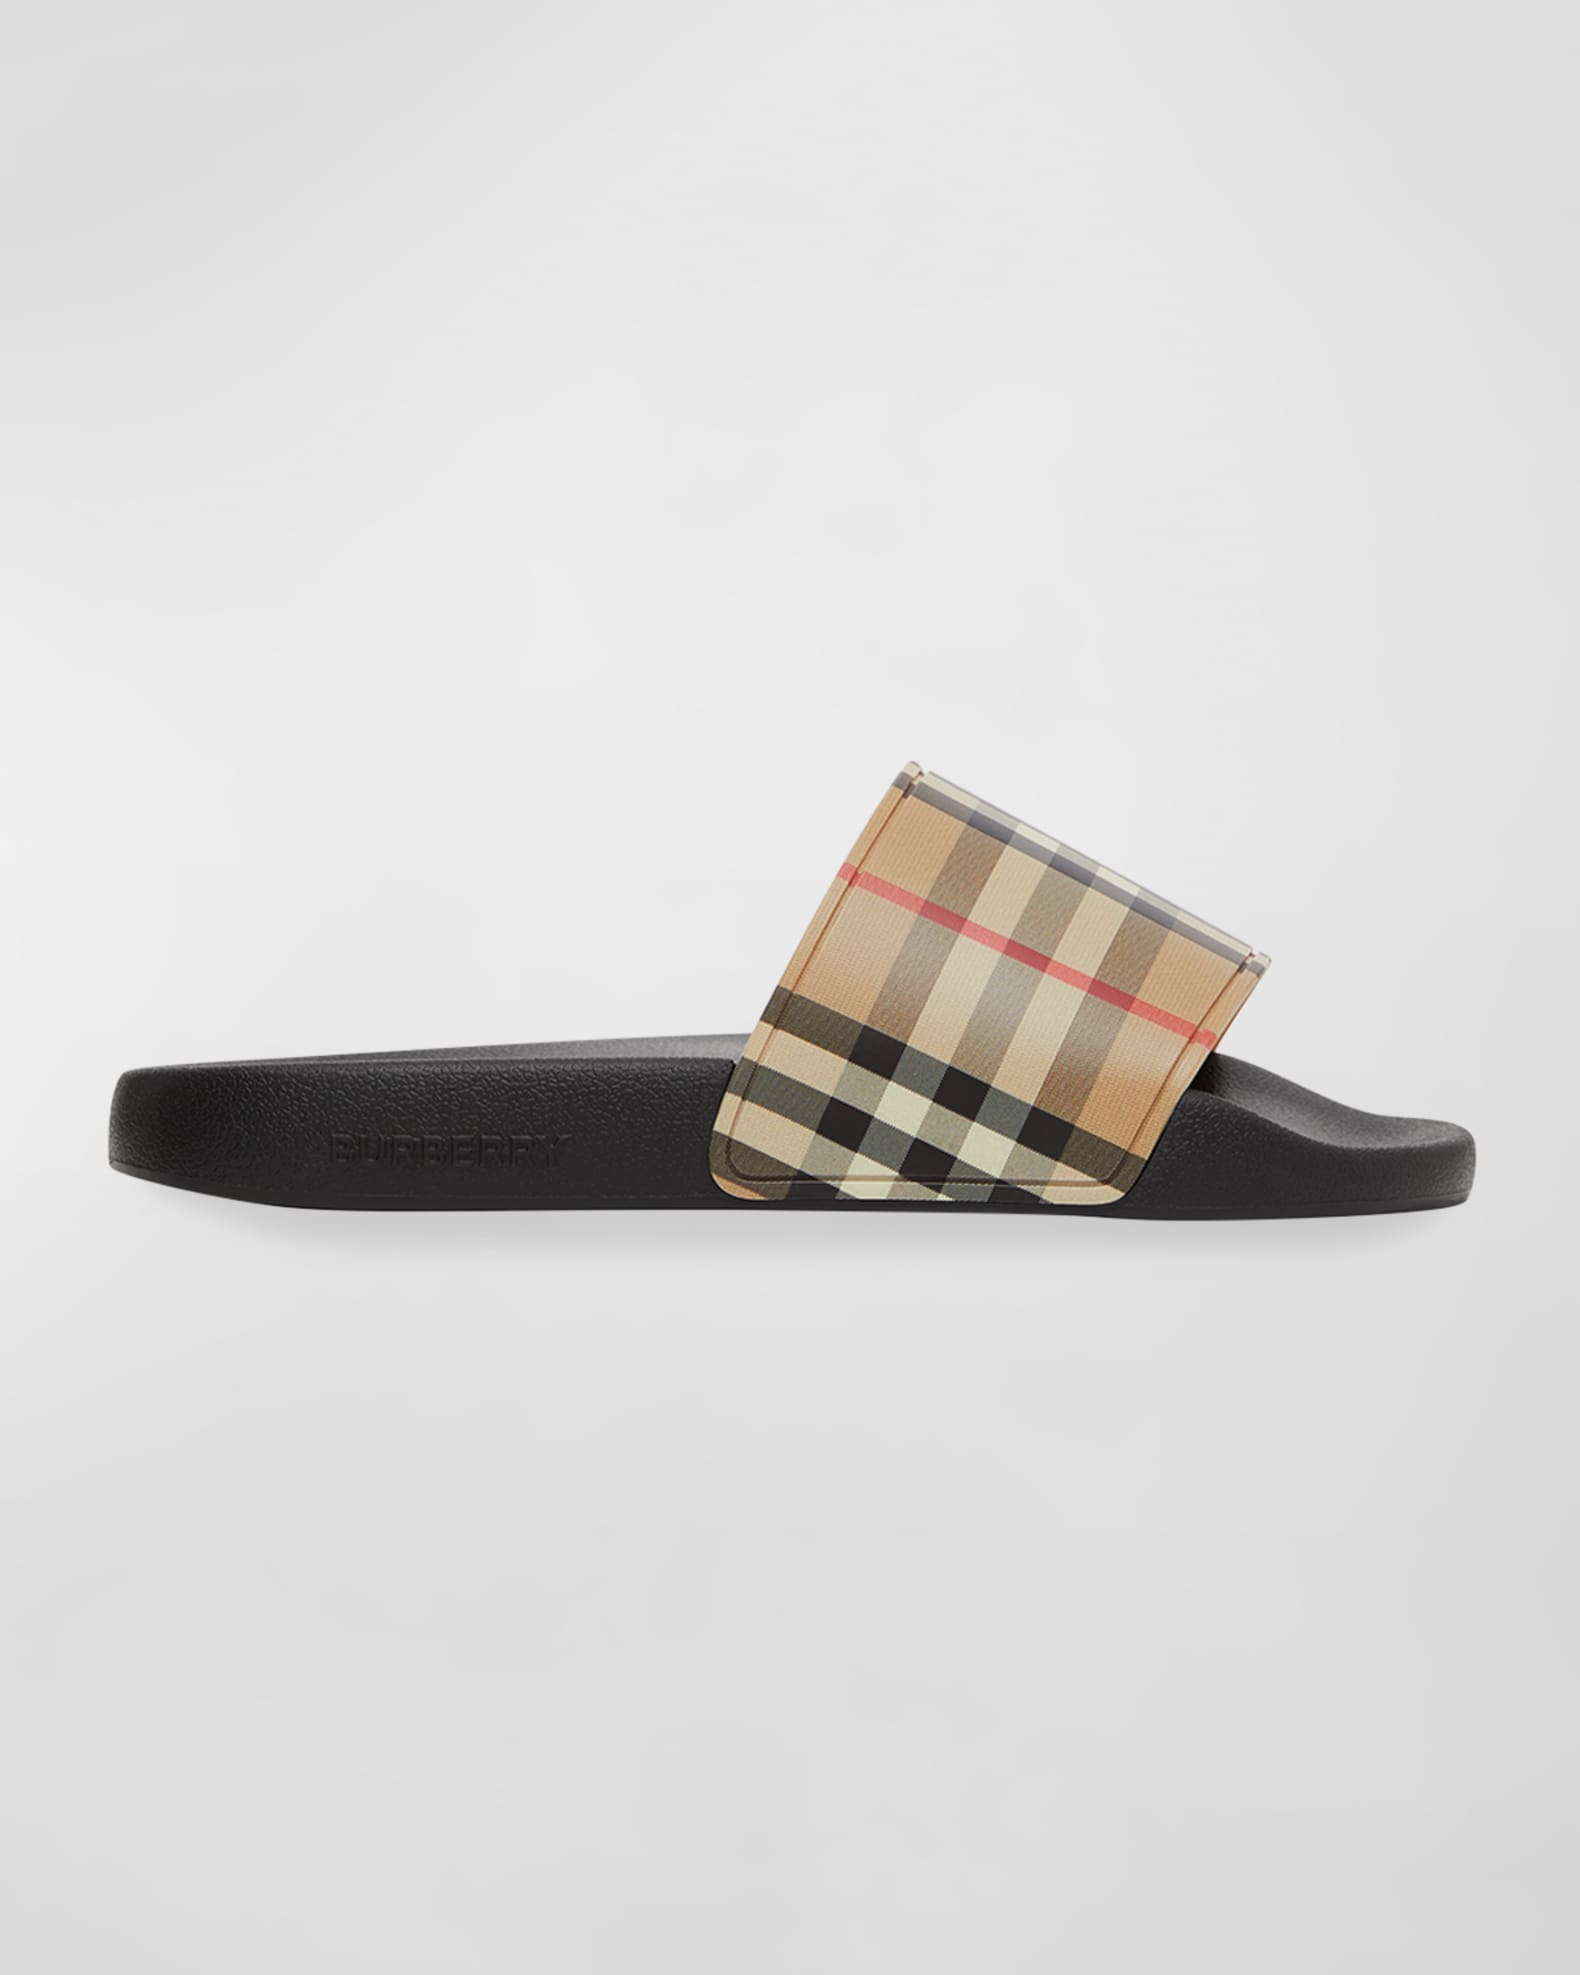 Louis Vuitton Brown Monogram Canvas Lock It Slides Sandals Size 37